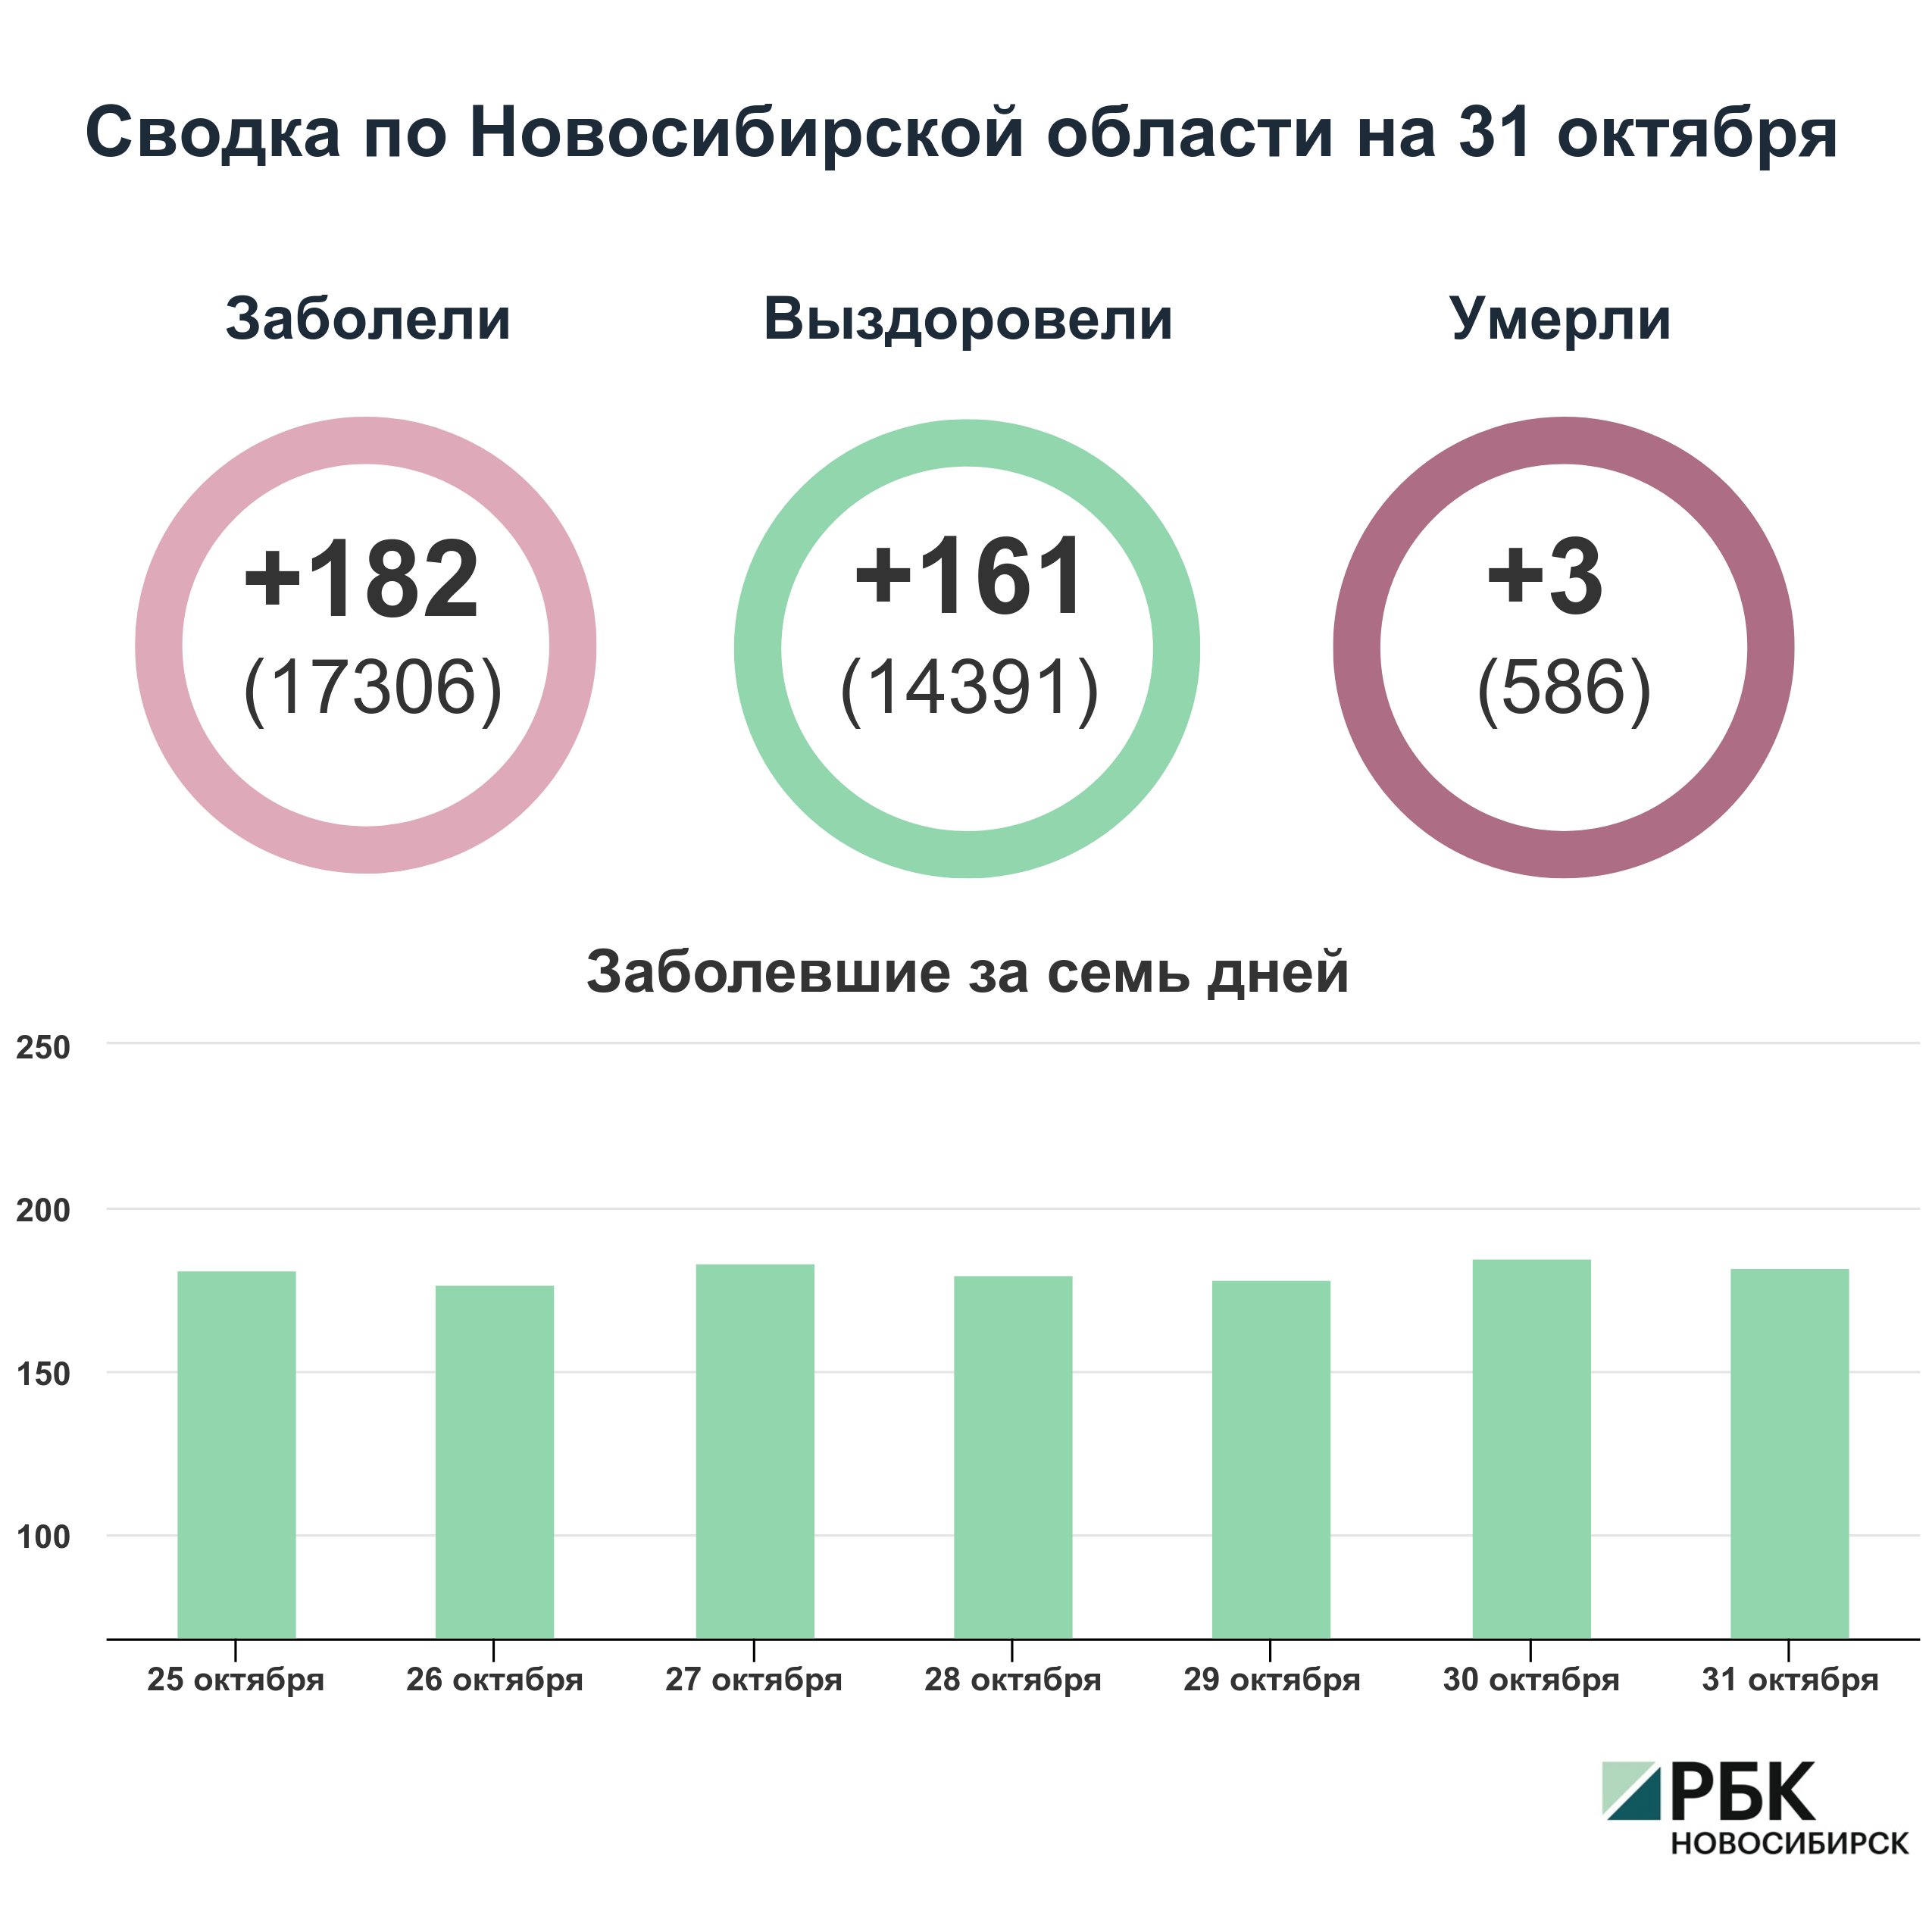 Коронавирус в Новосибирске: сводка на 31 октября